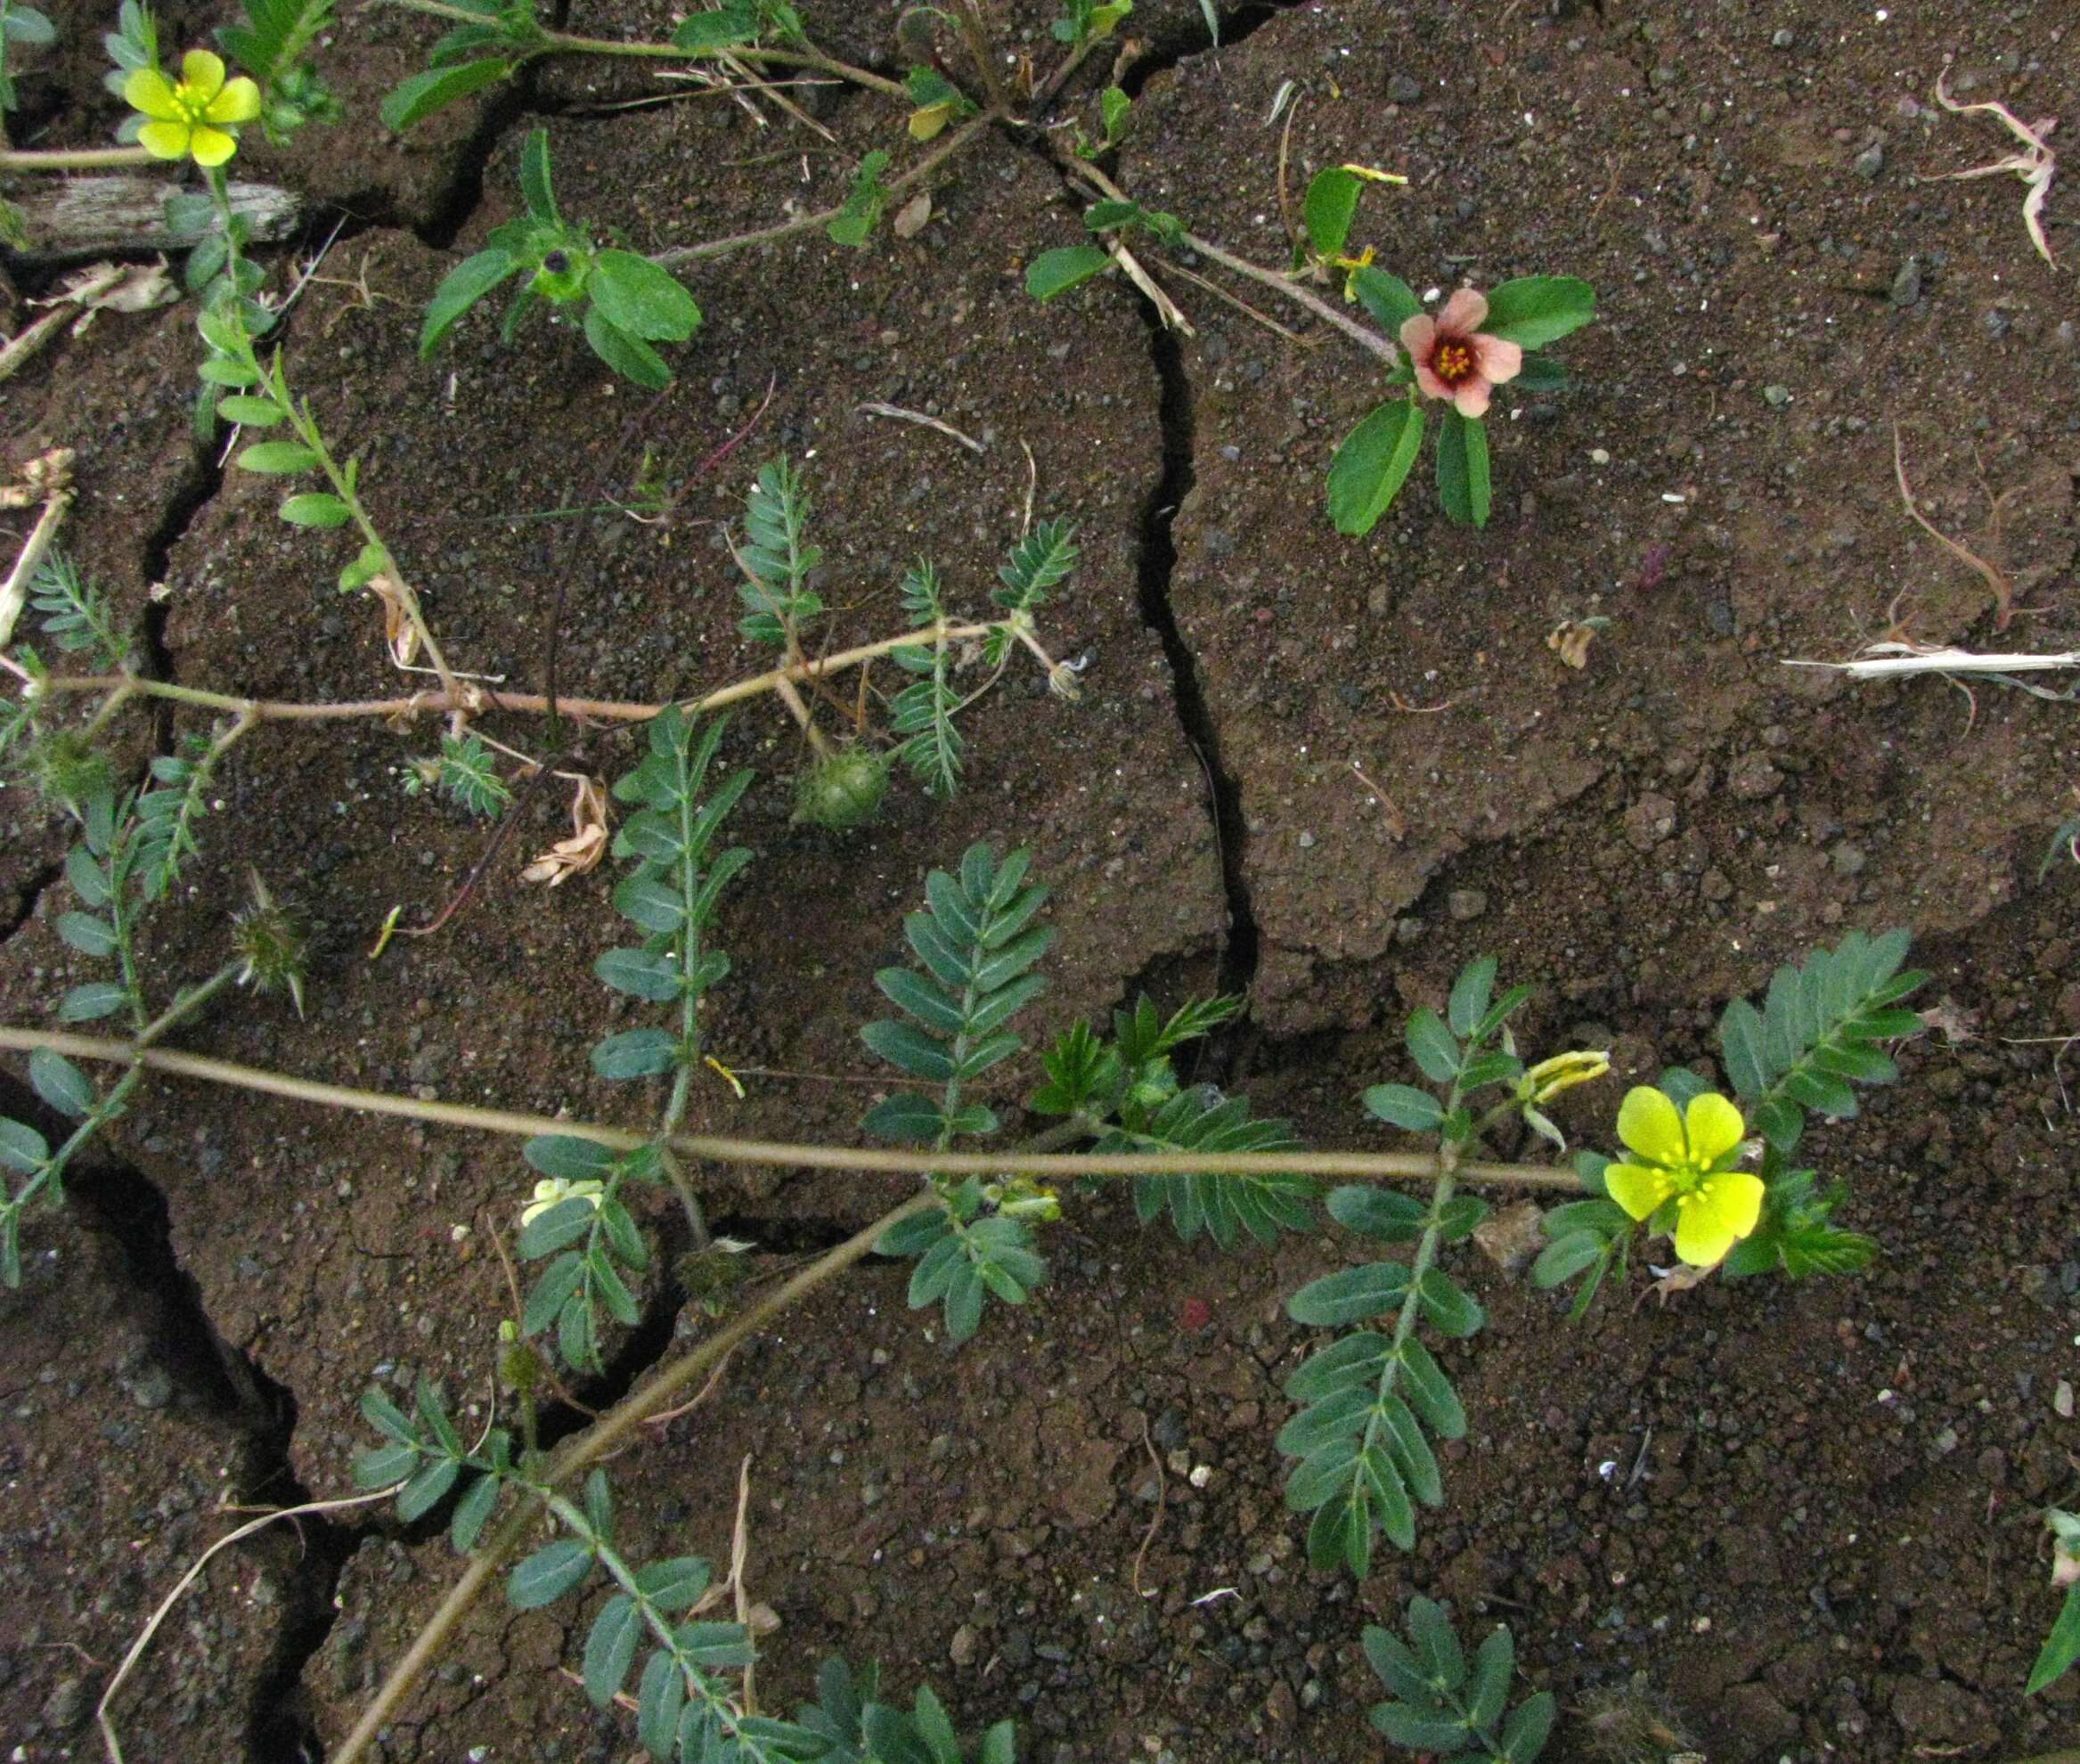 Image of puncture vine